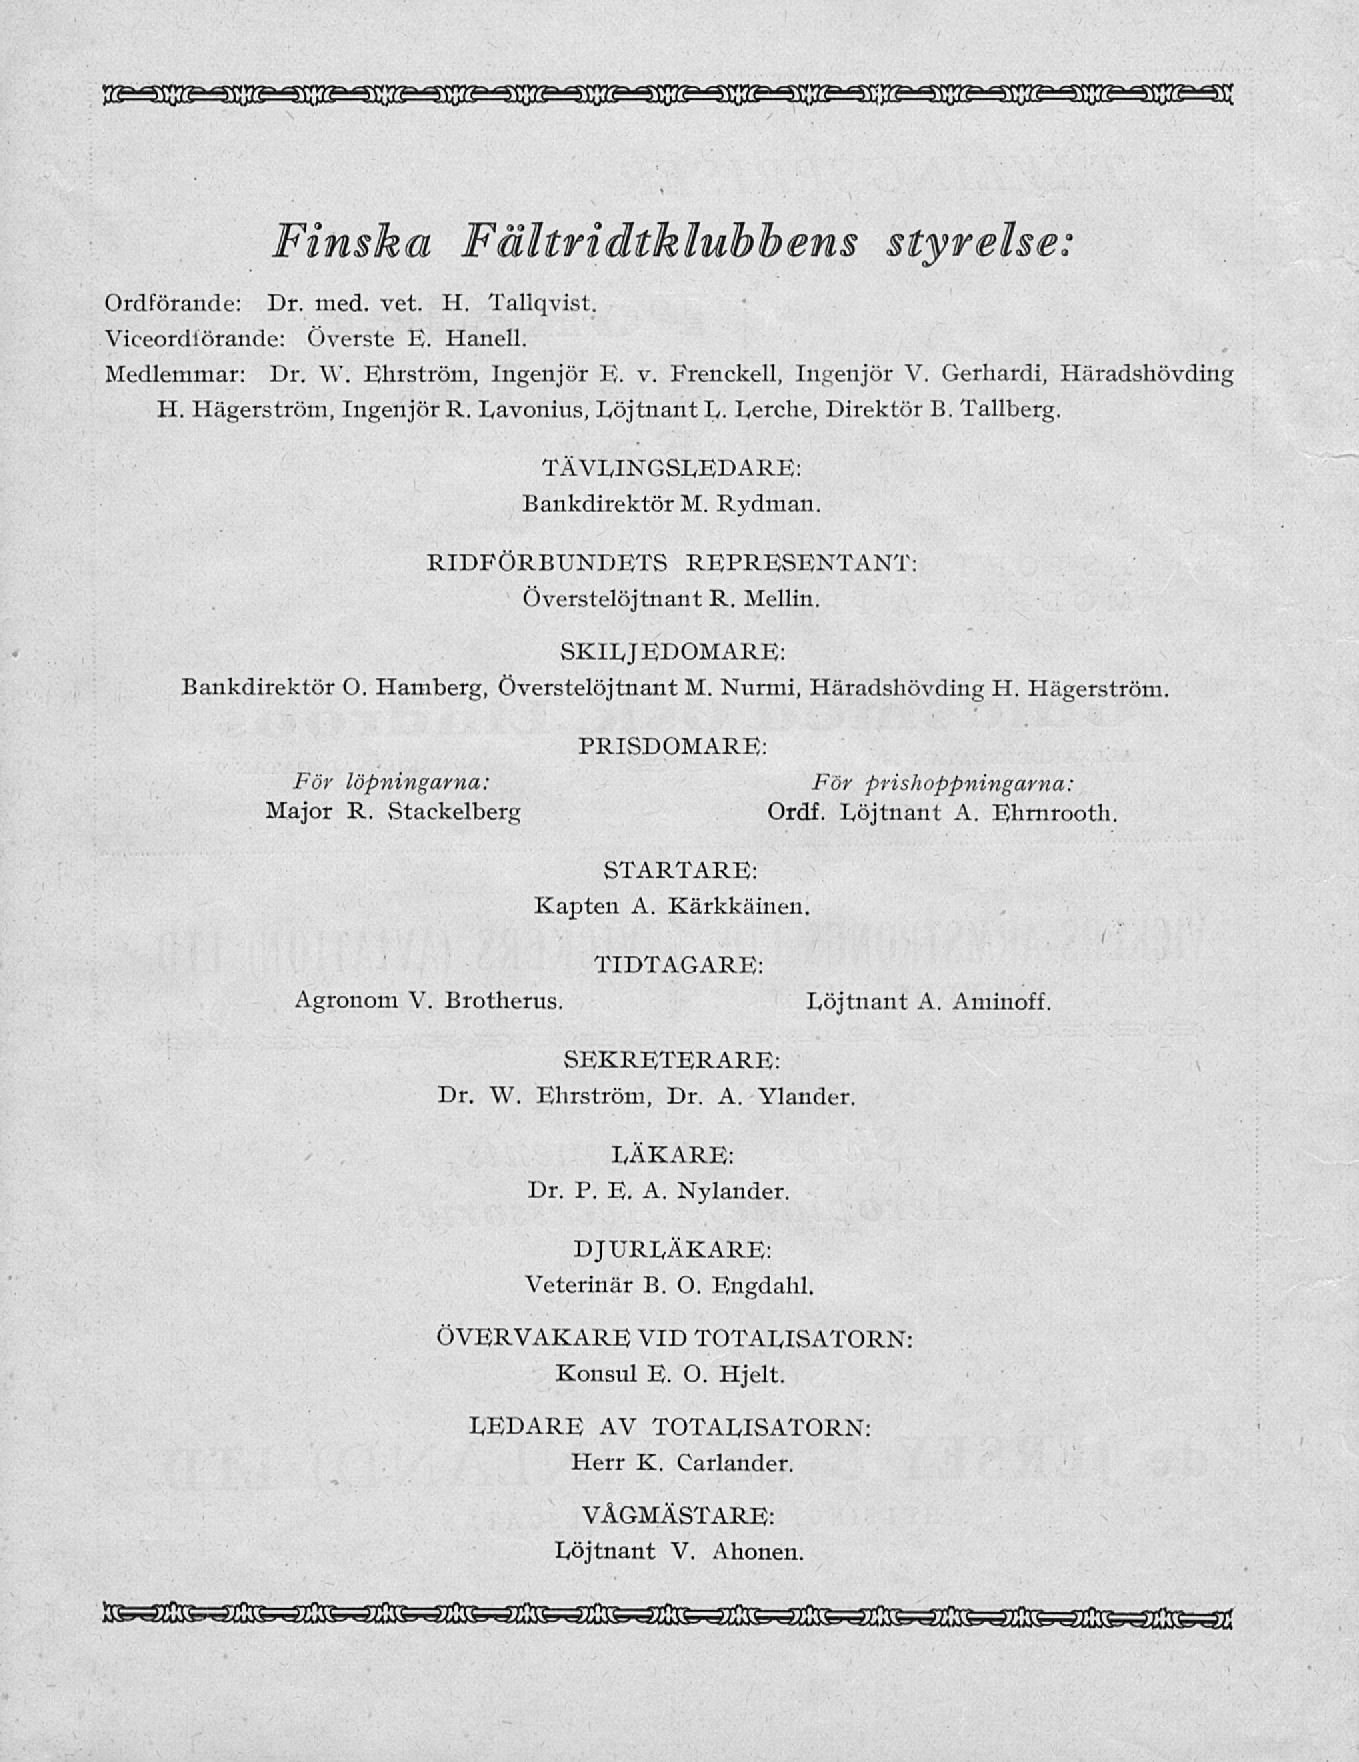 Finska Fältridtklubbens styrelse: Ordförande: Dr. med. vet. H. Tallqvist. Viceordiörande: Överste E. Hanell. Medlemmar: Dr. W. Ehrström, Ingenjör E. v. Frenckell, Ingenjör V.